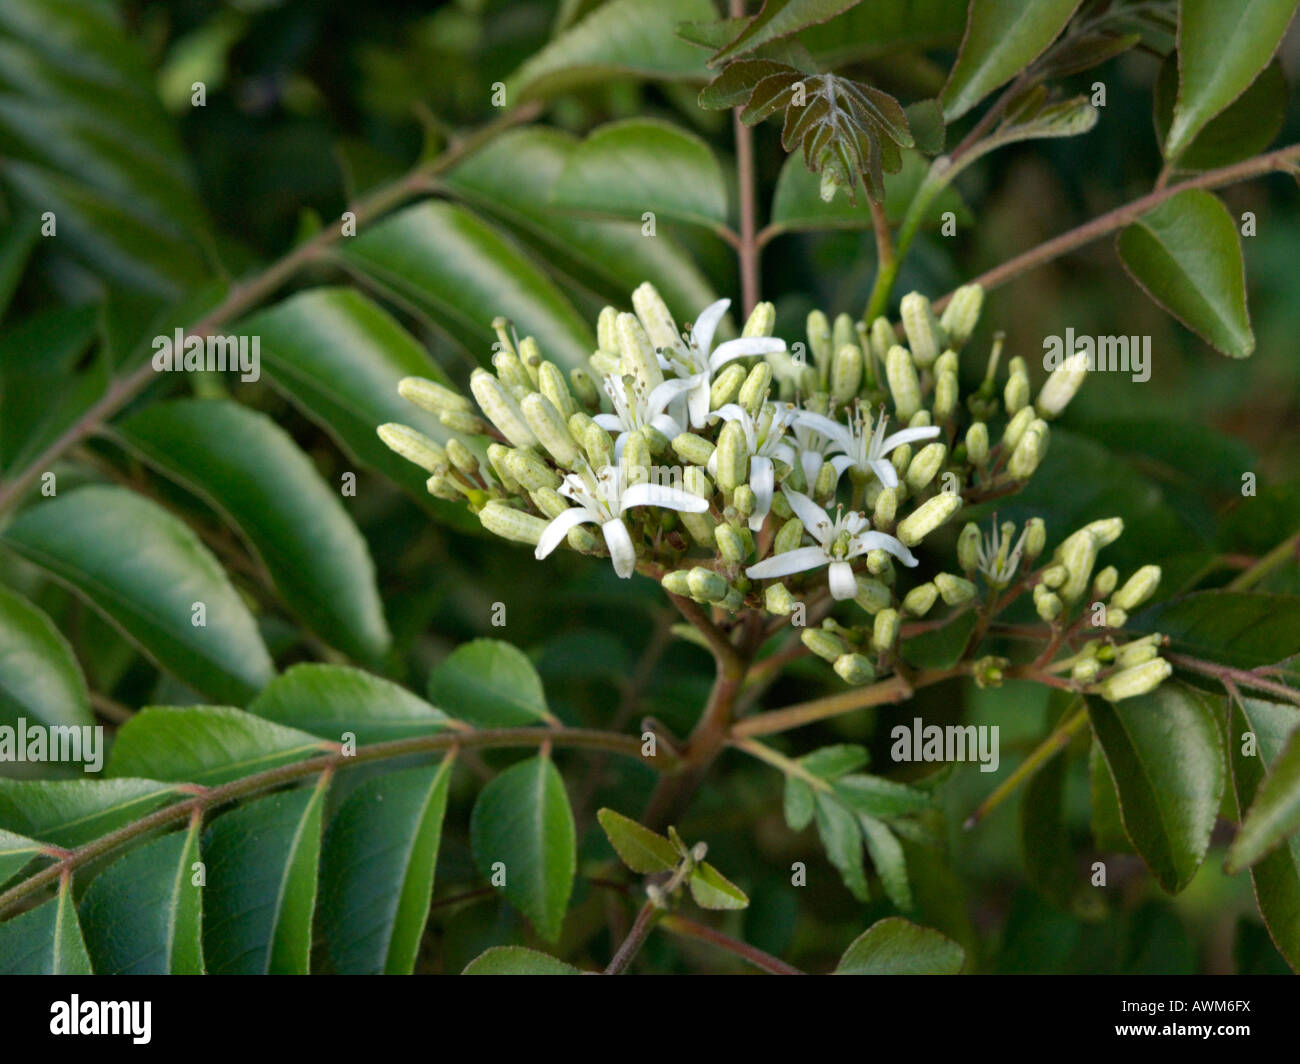 Curry tree (Murraya koenigii) Stock Photo